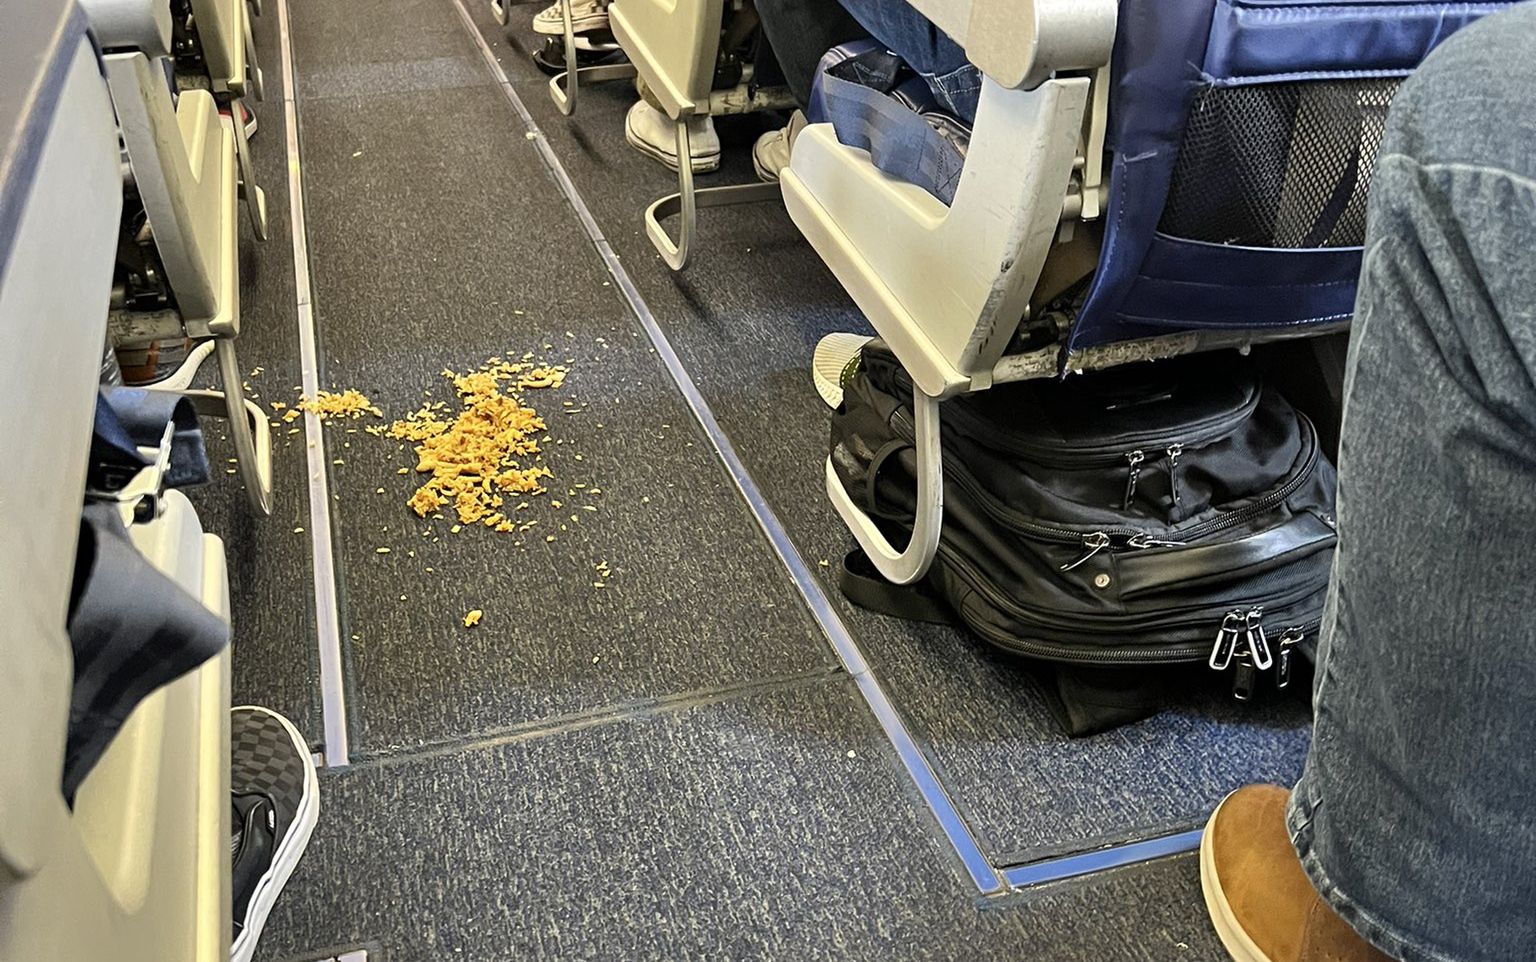 Stewardesa się zemściła. Nikt z pasażerów nie chciał się do tego przyznać